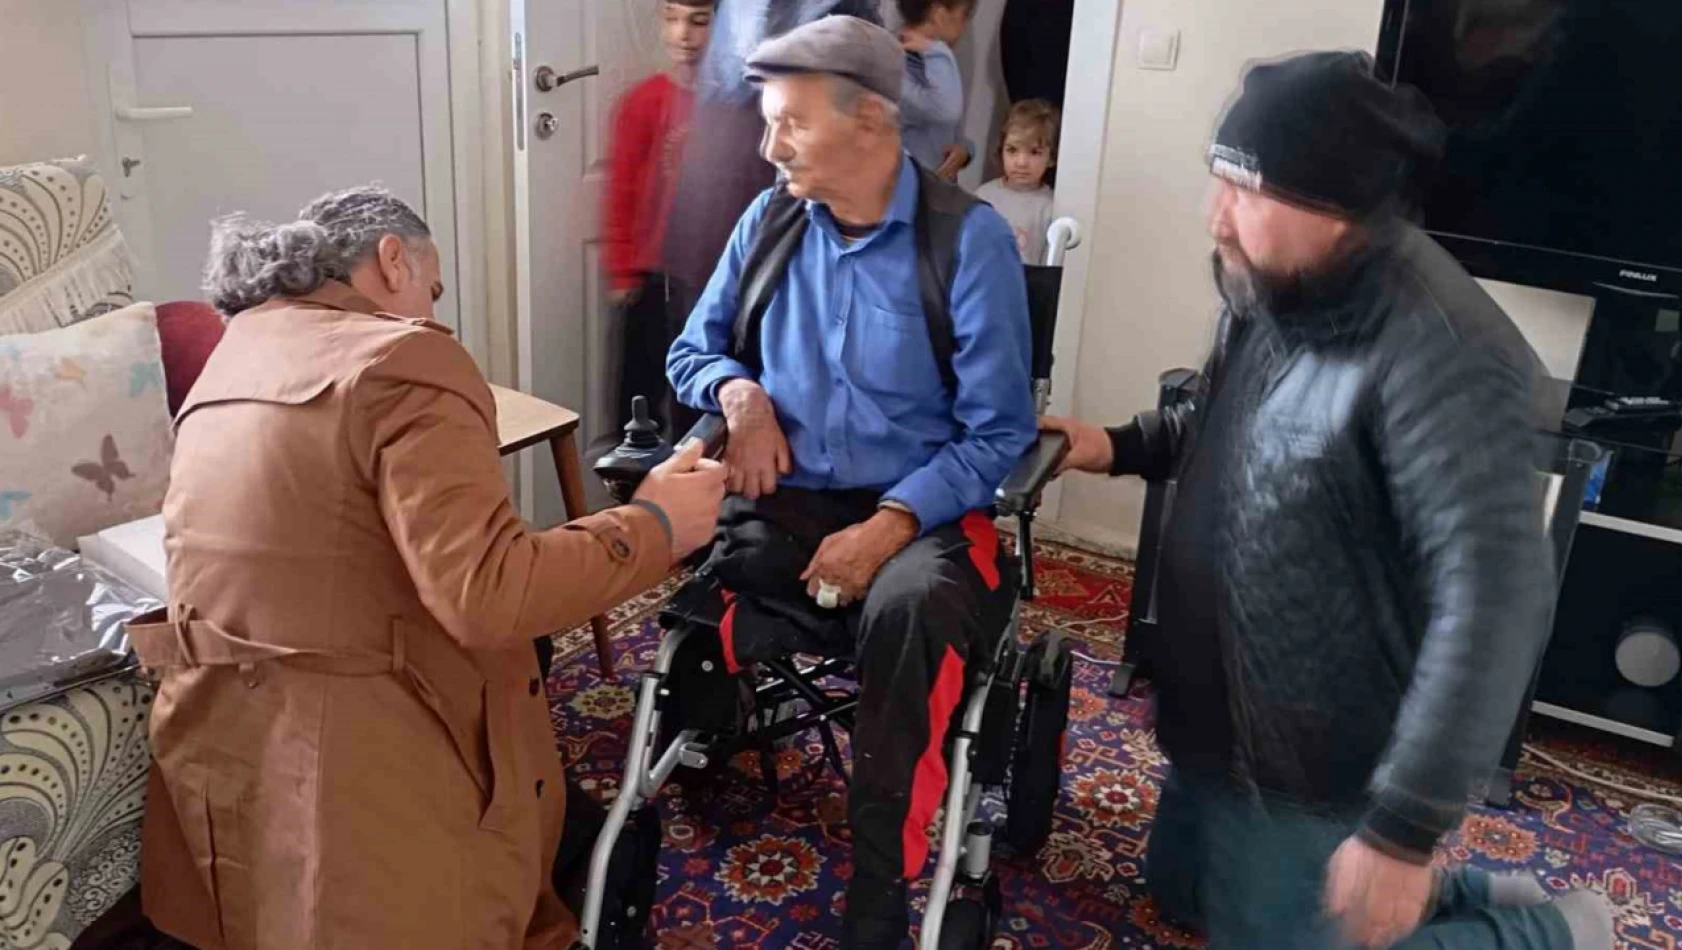 85 yaşındaki Enver Dede artık istediği gibi gezebilecek